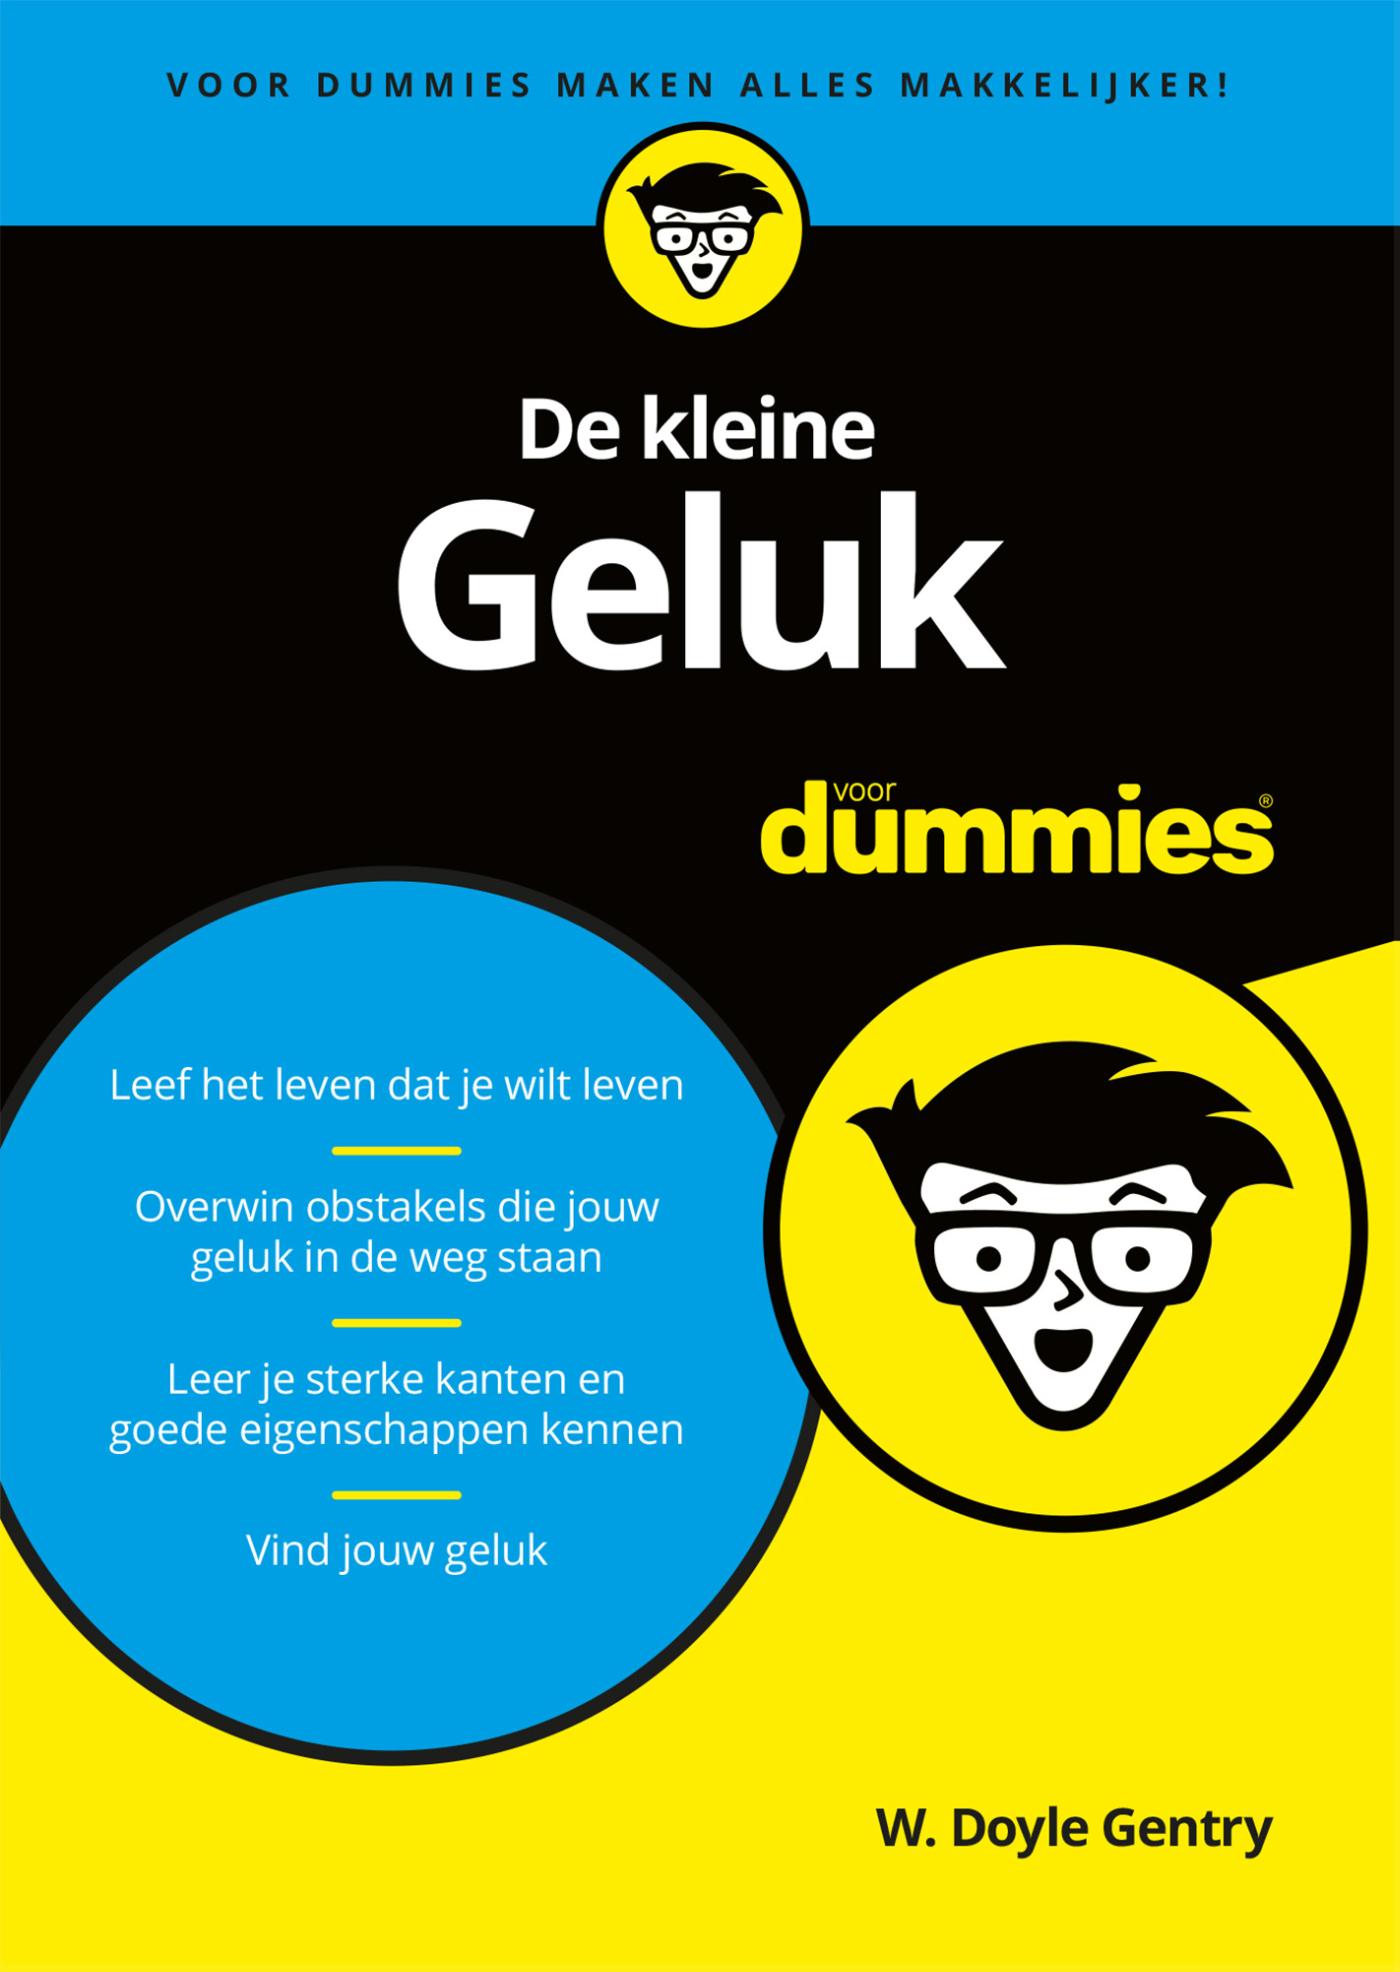 De kleine Geluk voor Dummies (Ebook)